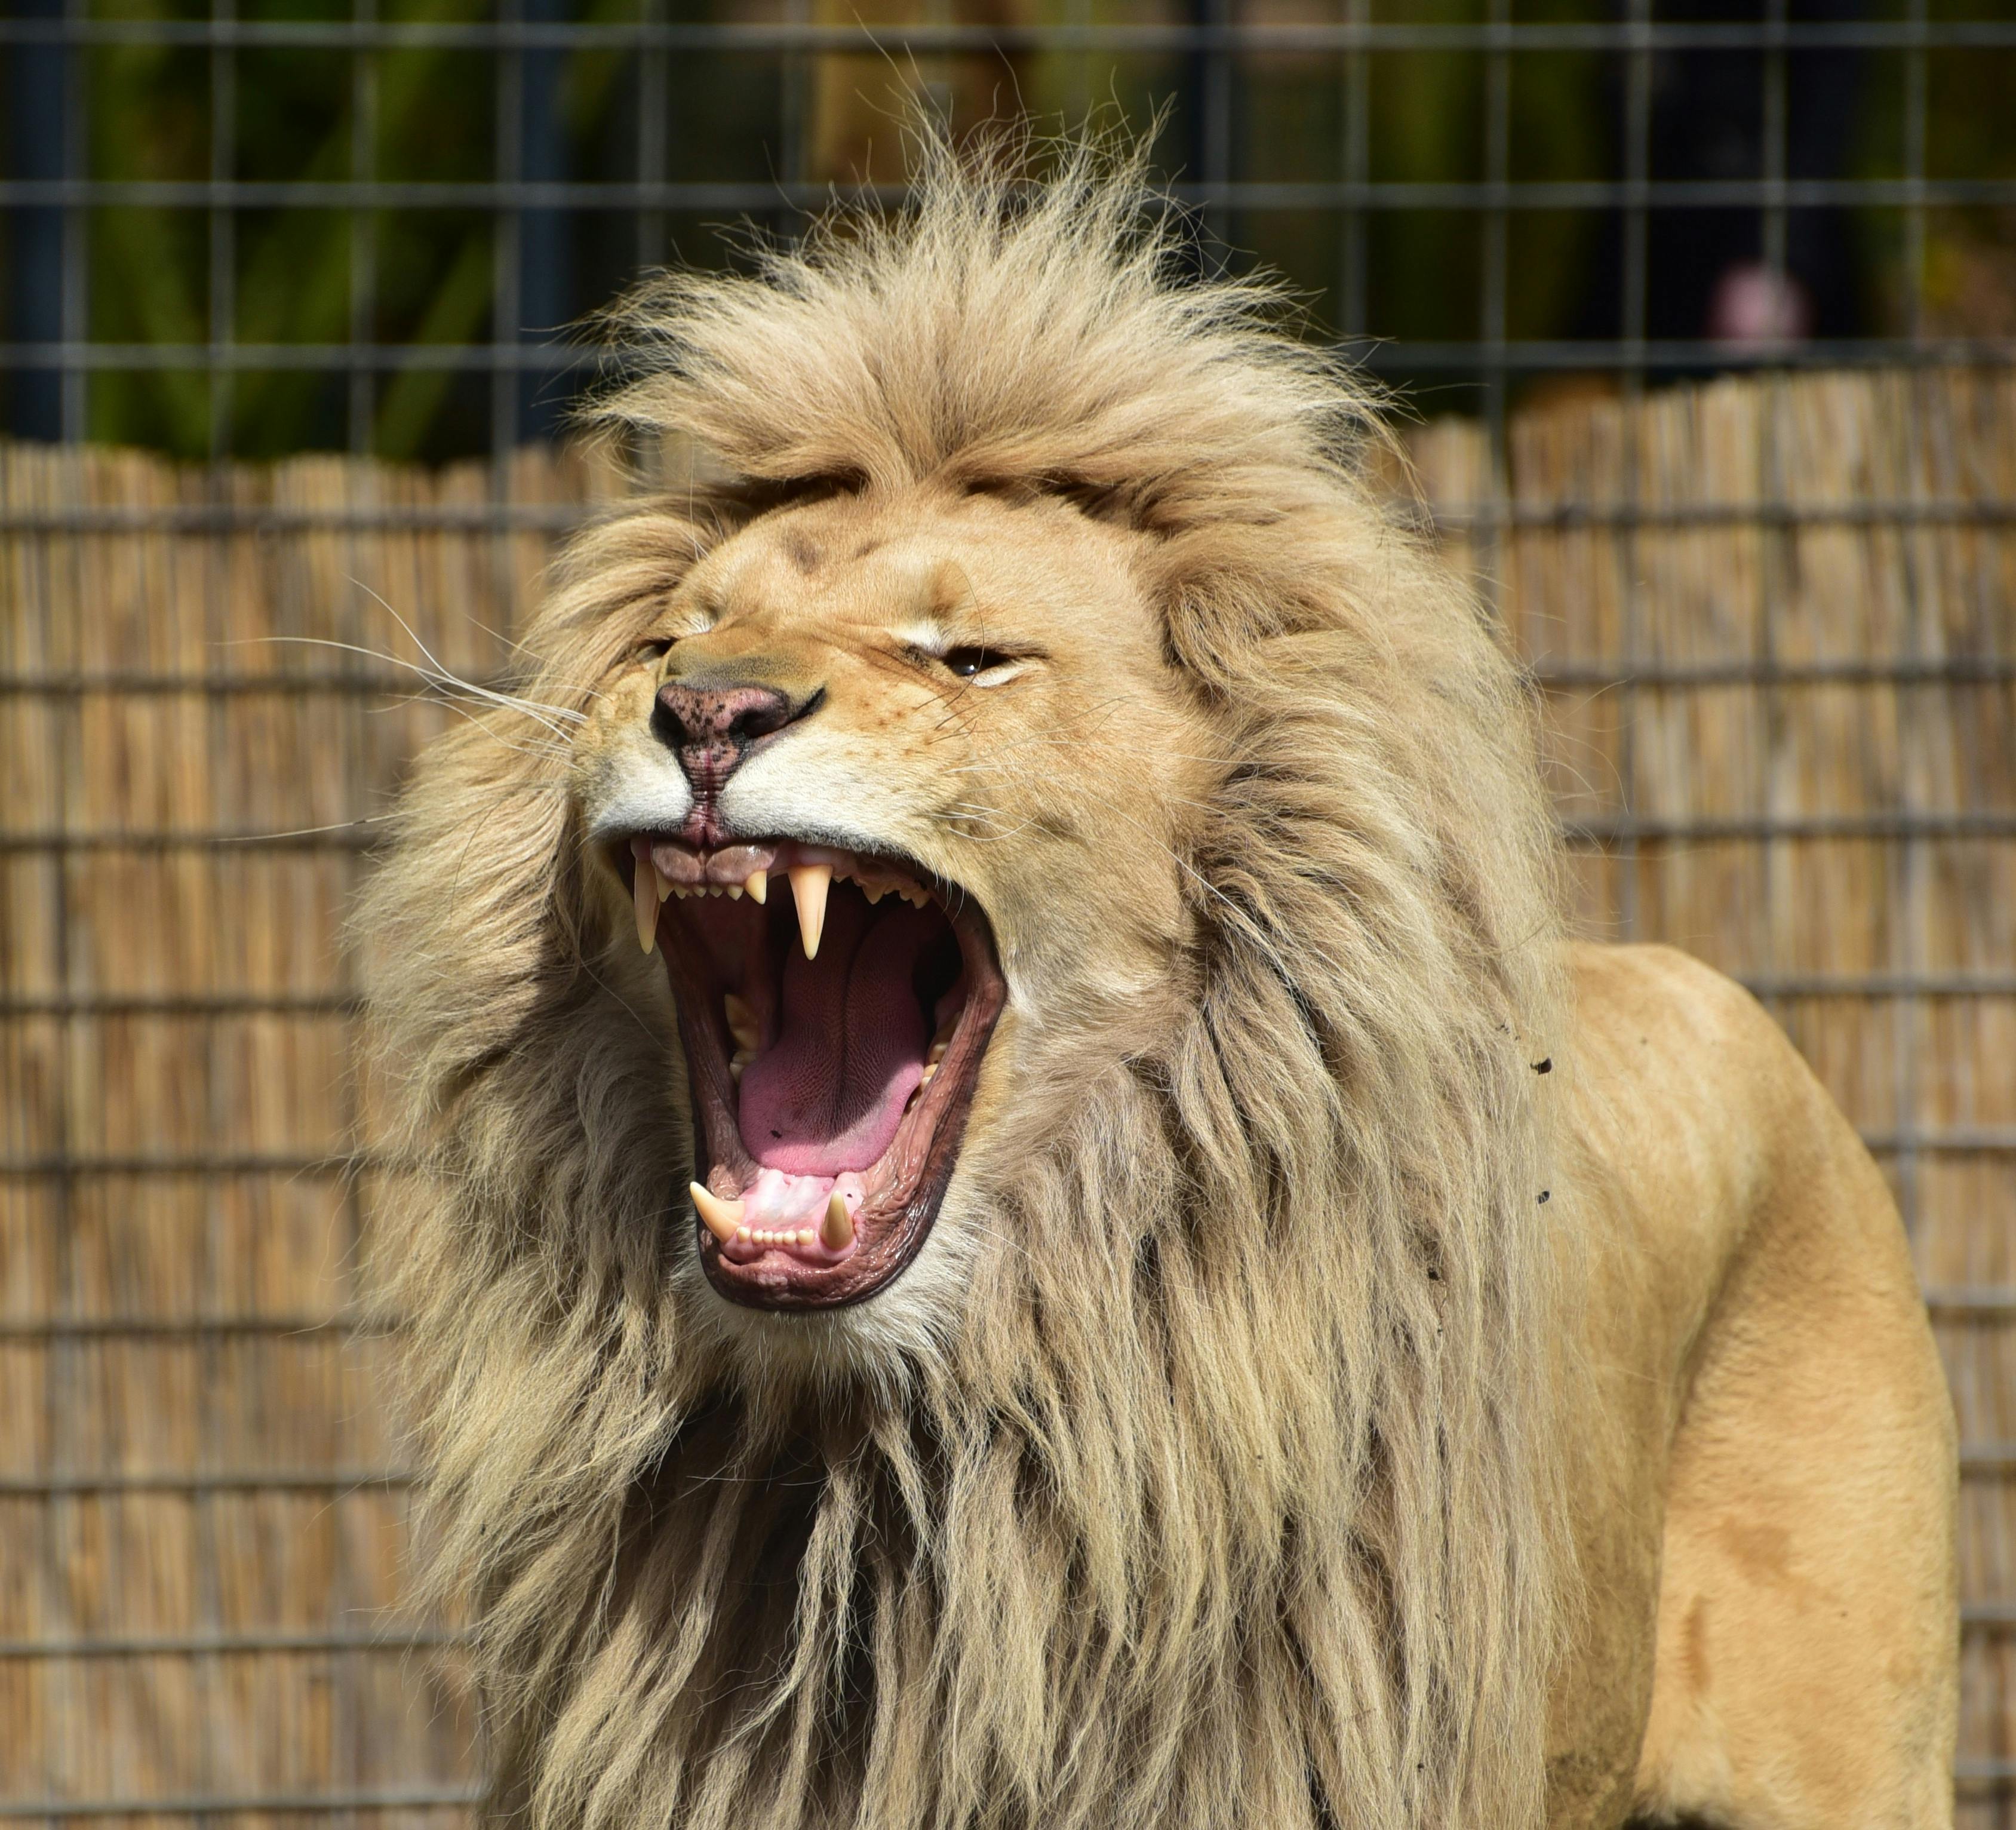 Scavalca il recinto per farsi un selfie con il leone e muore sbranato